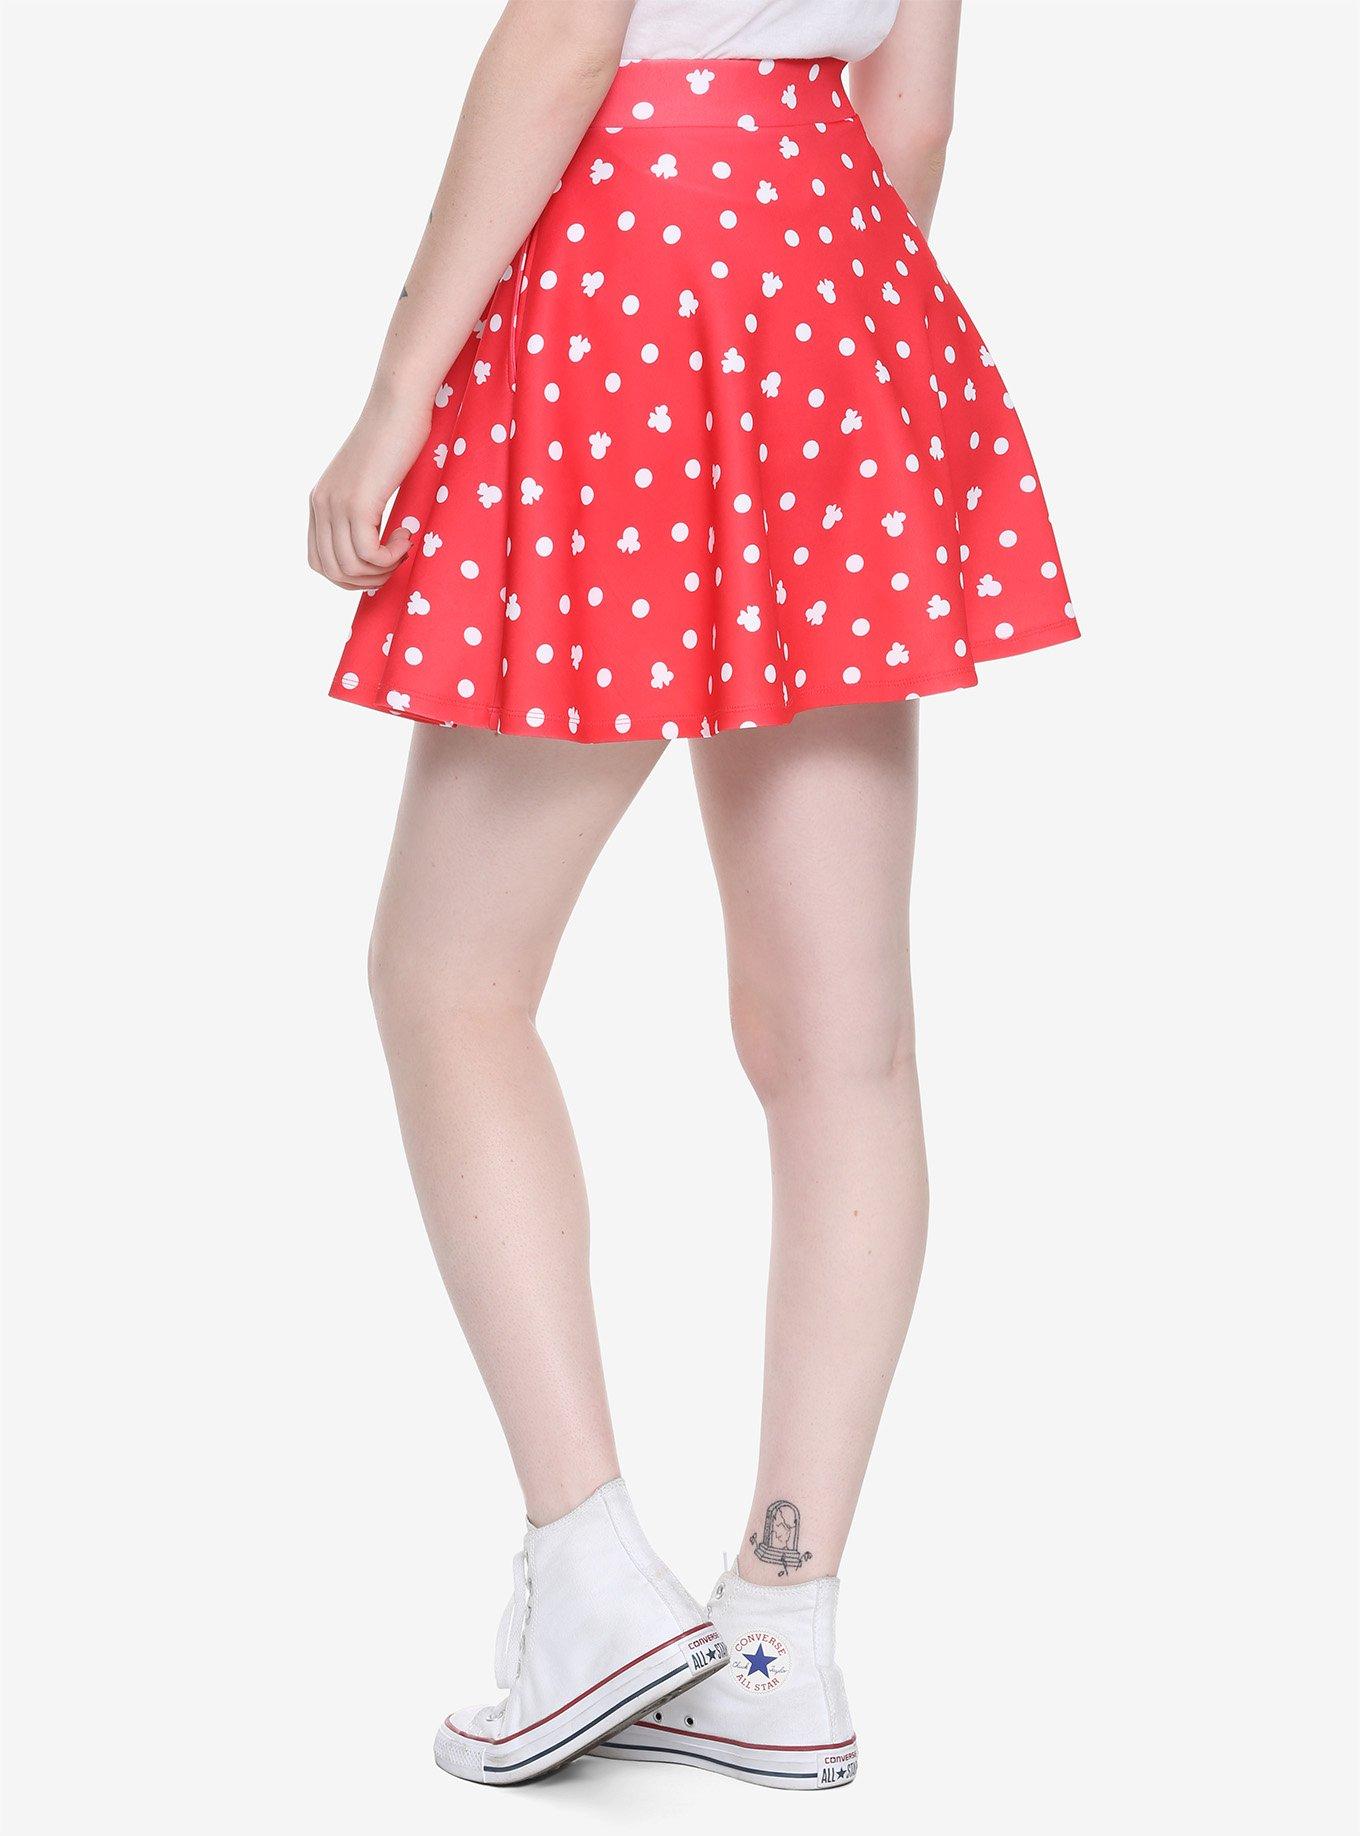 Disney Minnie Mouse Red Skater Skirt, , alternate